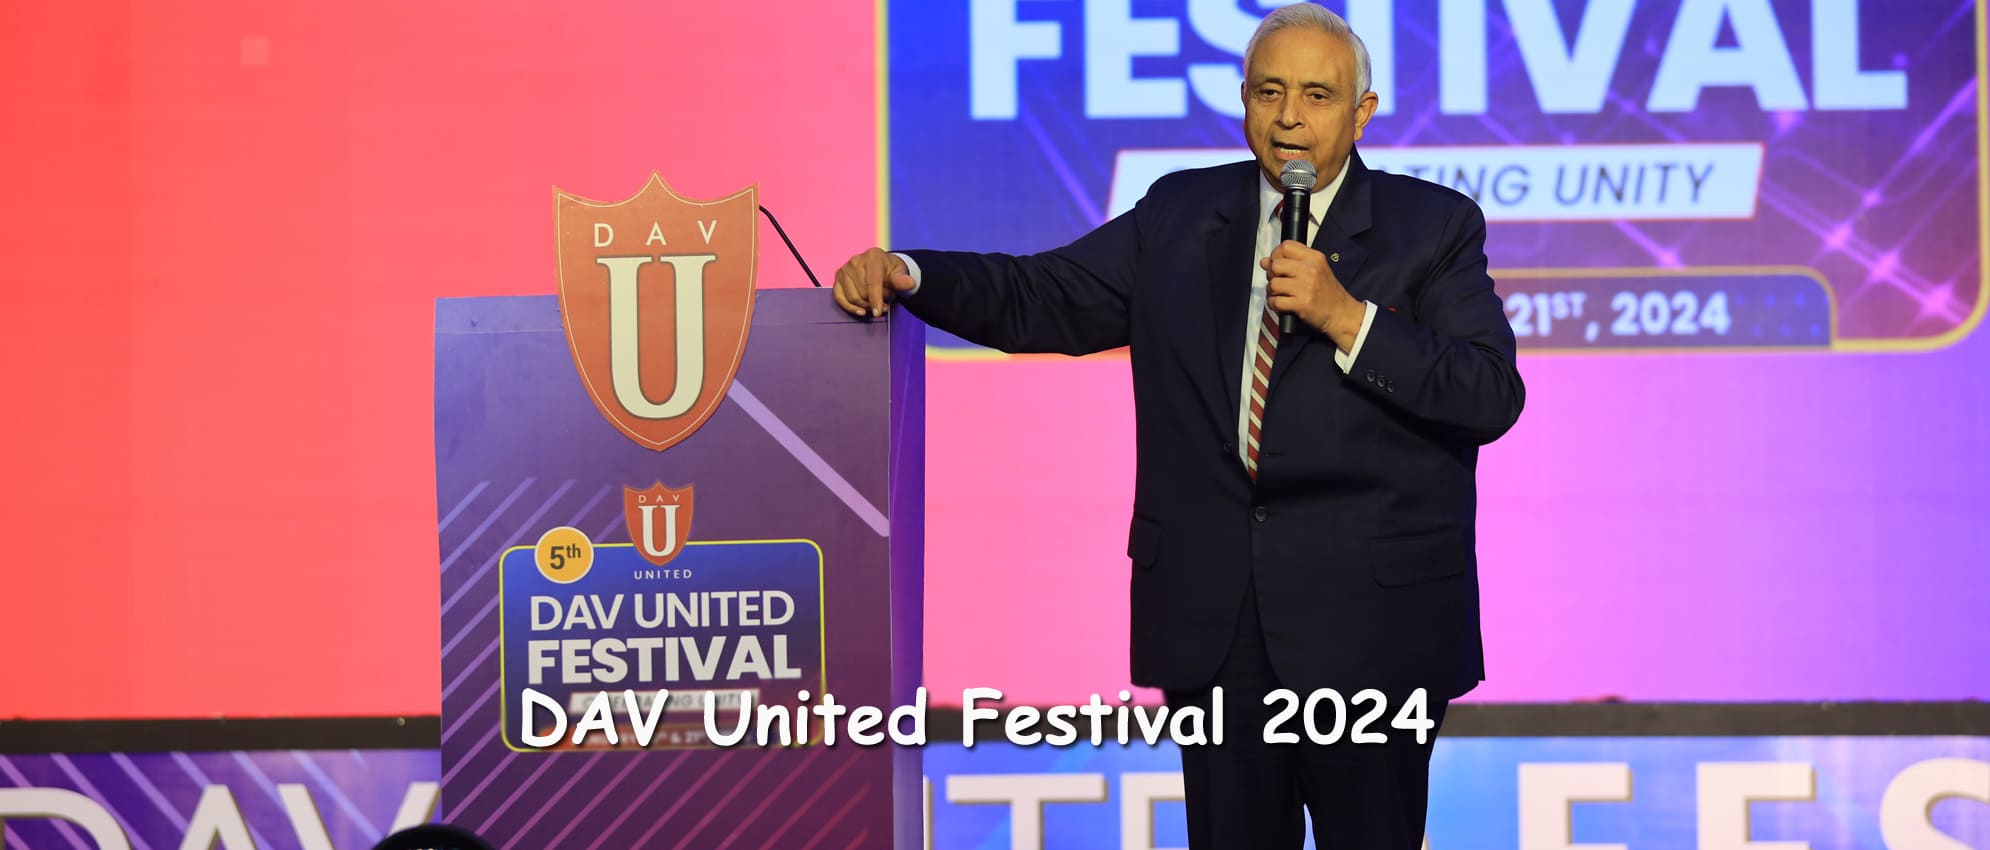 DAV United Festival 2024